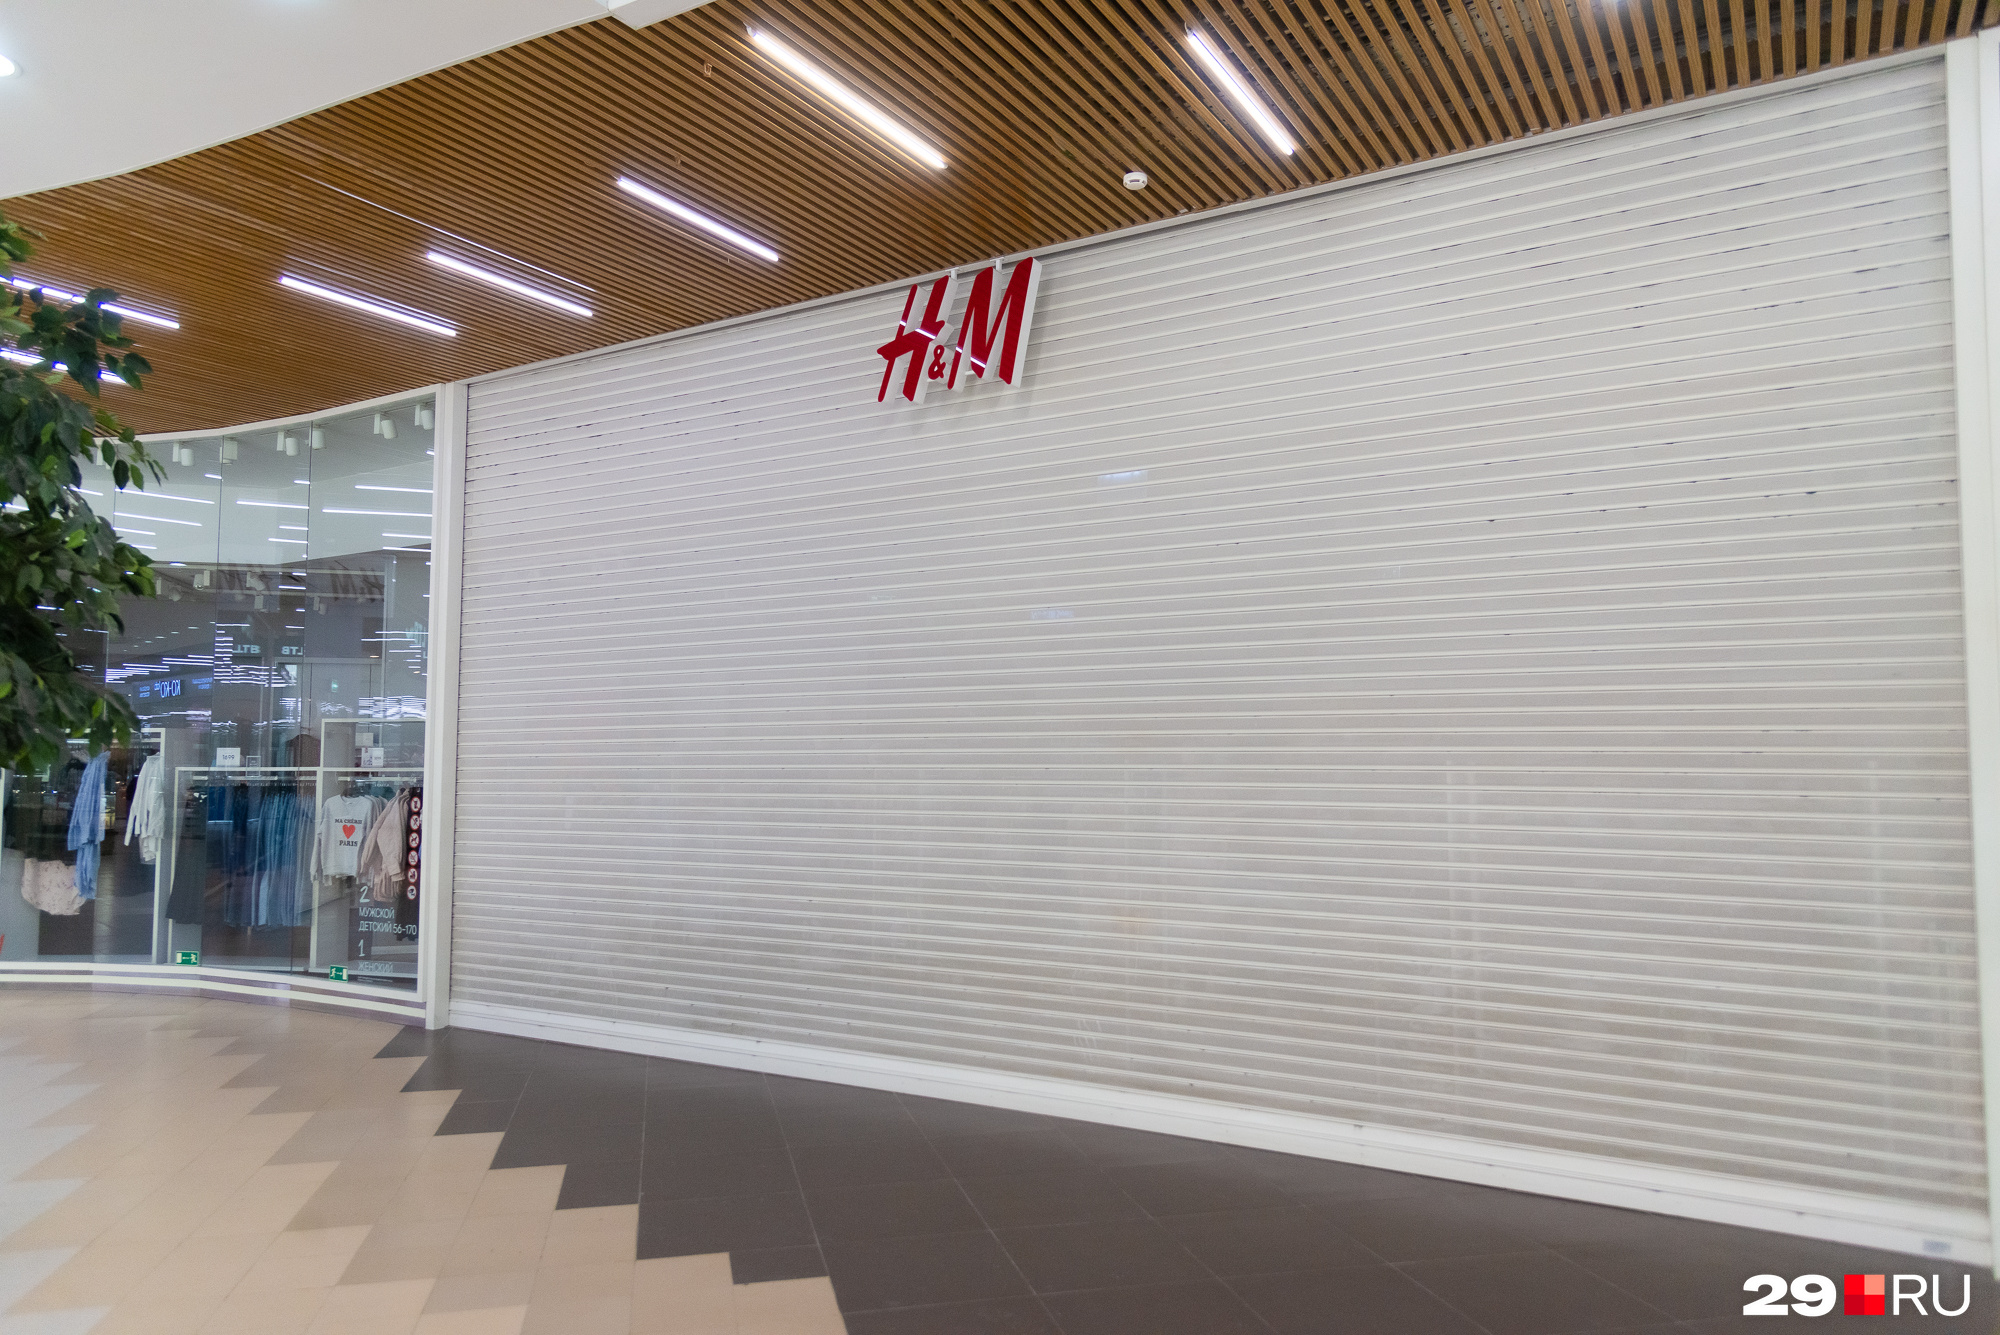 Одним из первых перестал работать H&M. Мы уже спрашивали архангелогородцев, <a href="https://29.ru/text/business/2022/03/03/70484699/" class="_" target="_blank">как они отнеслись к его закрытию</a>